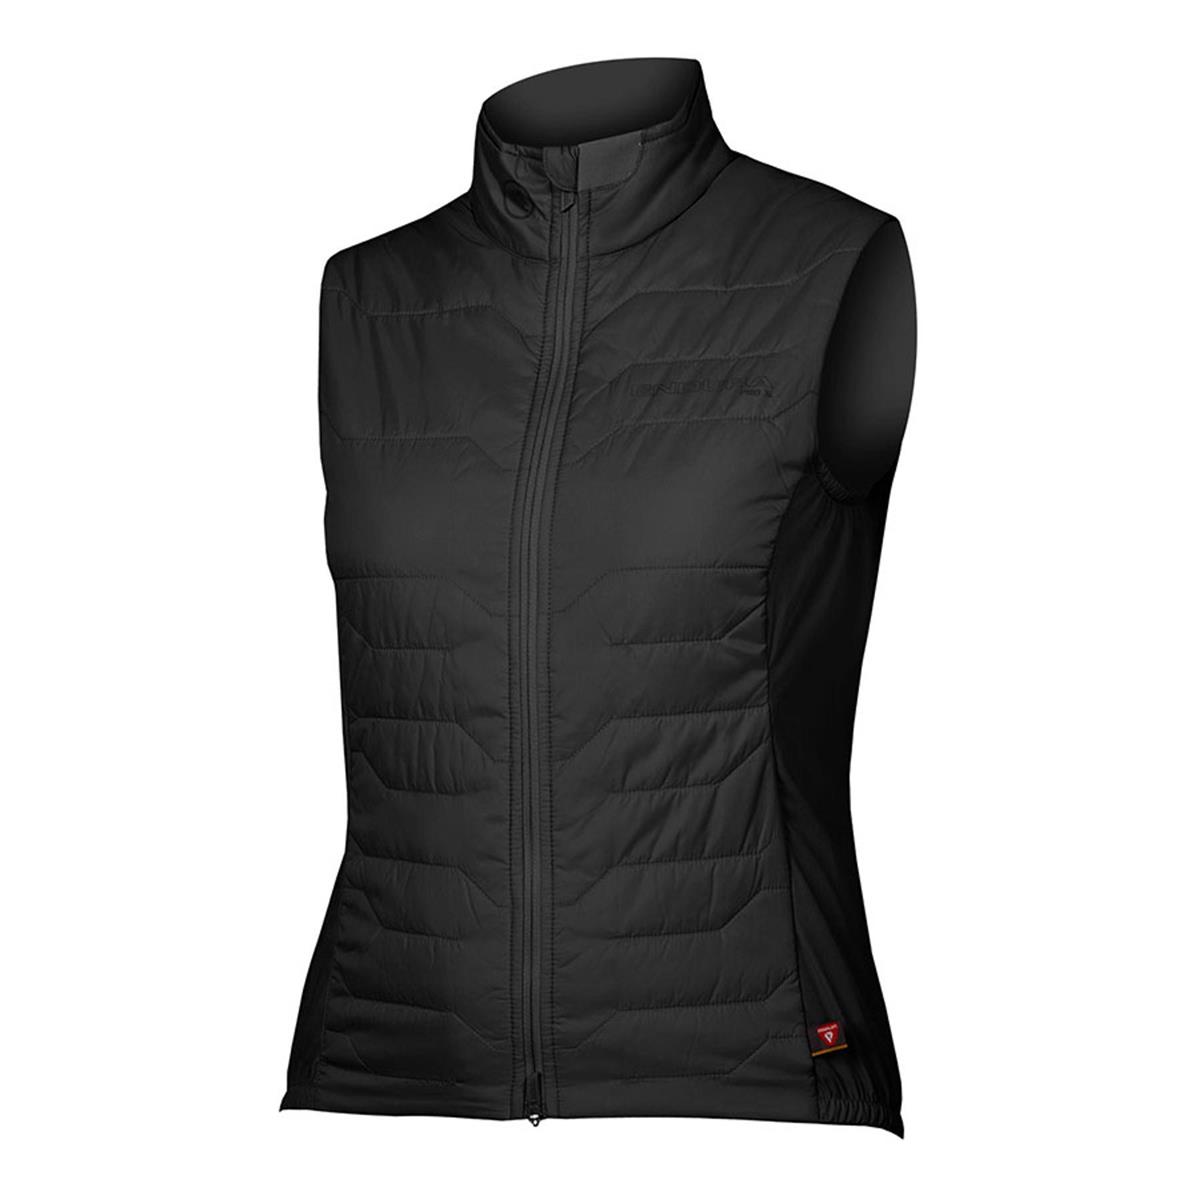 Pro SL PrimaLoft Rain/Windproof Vest Women's Vest Black size M